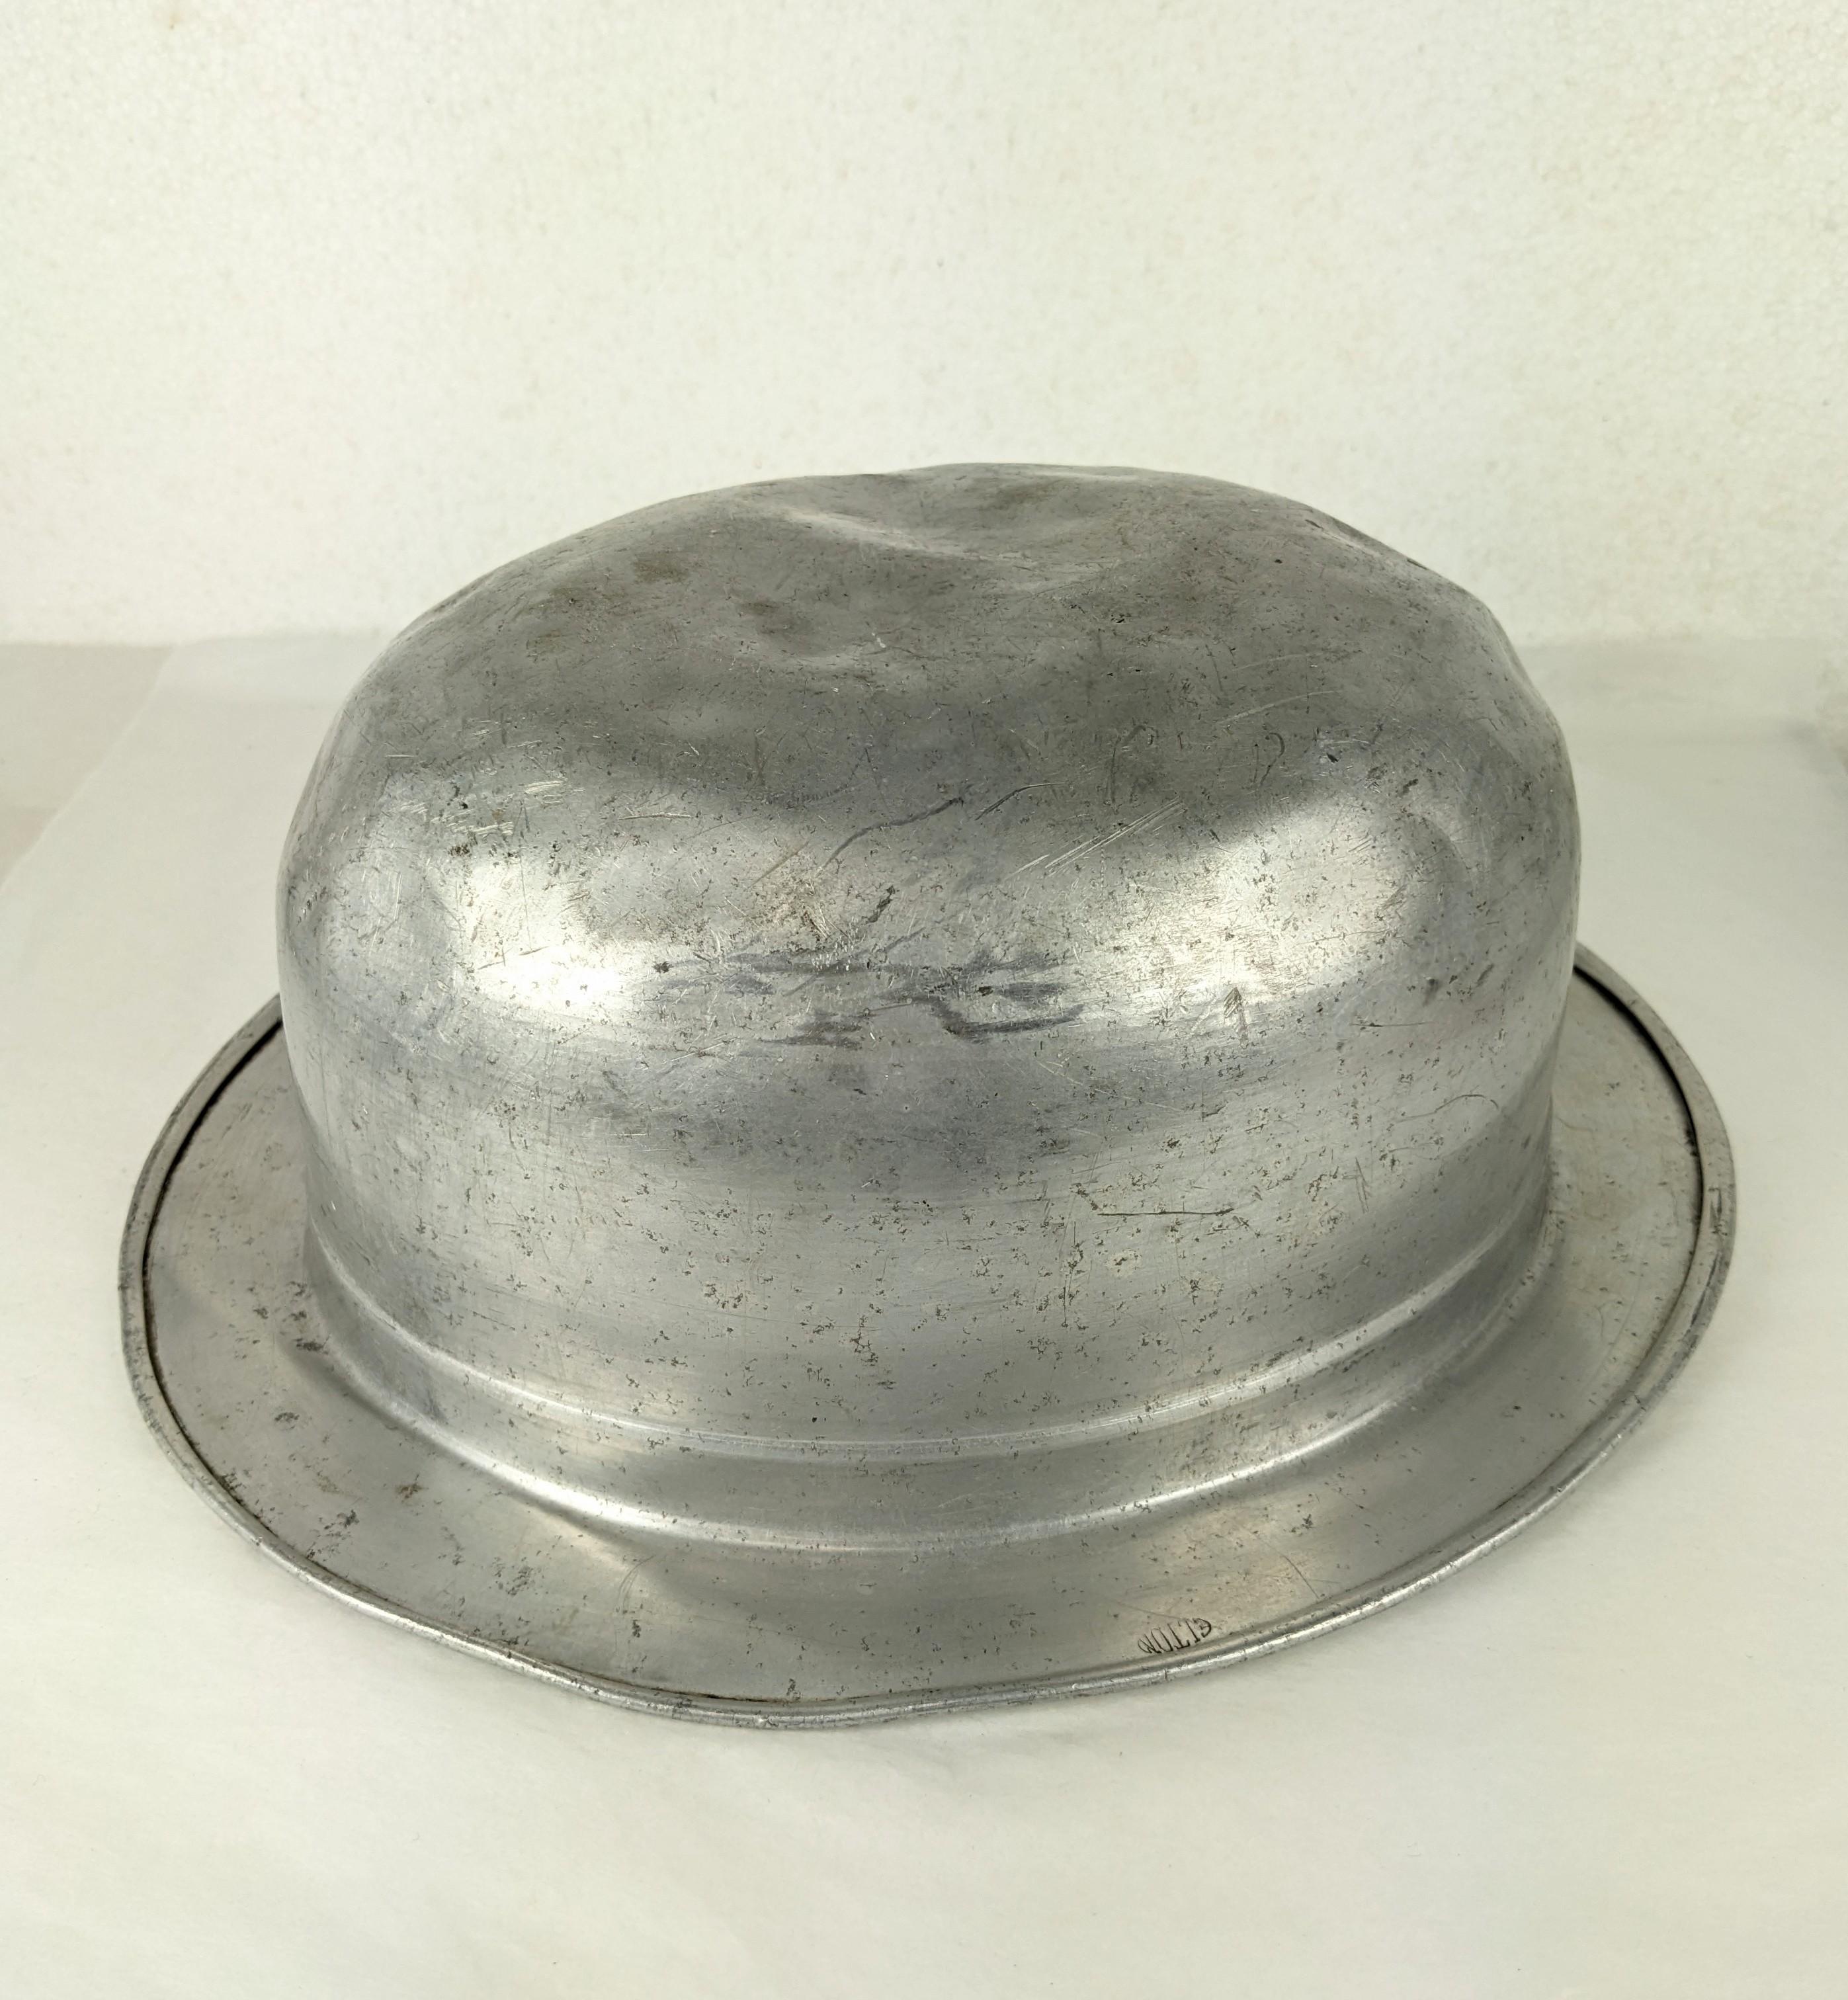 Metallschüssel der Jahrhundertwende aus geformtem Blech, möglicherweise ein Verkaufsmuster oder Ausstellungsstück. 1930's. Gezeichnet ELTON. 10,5